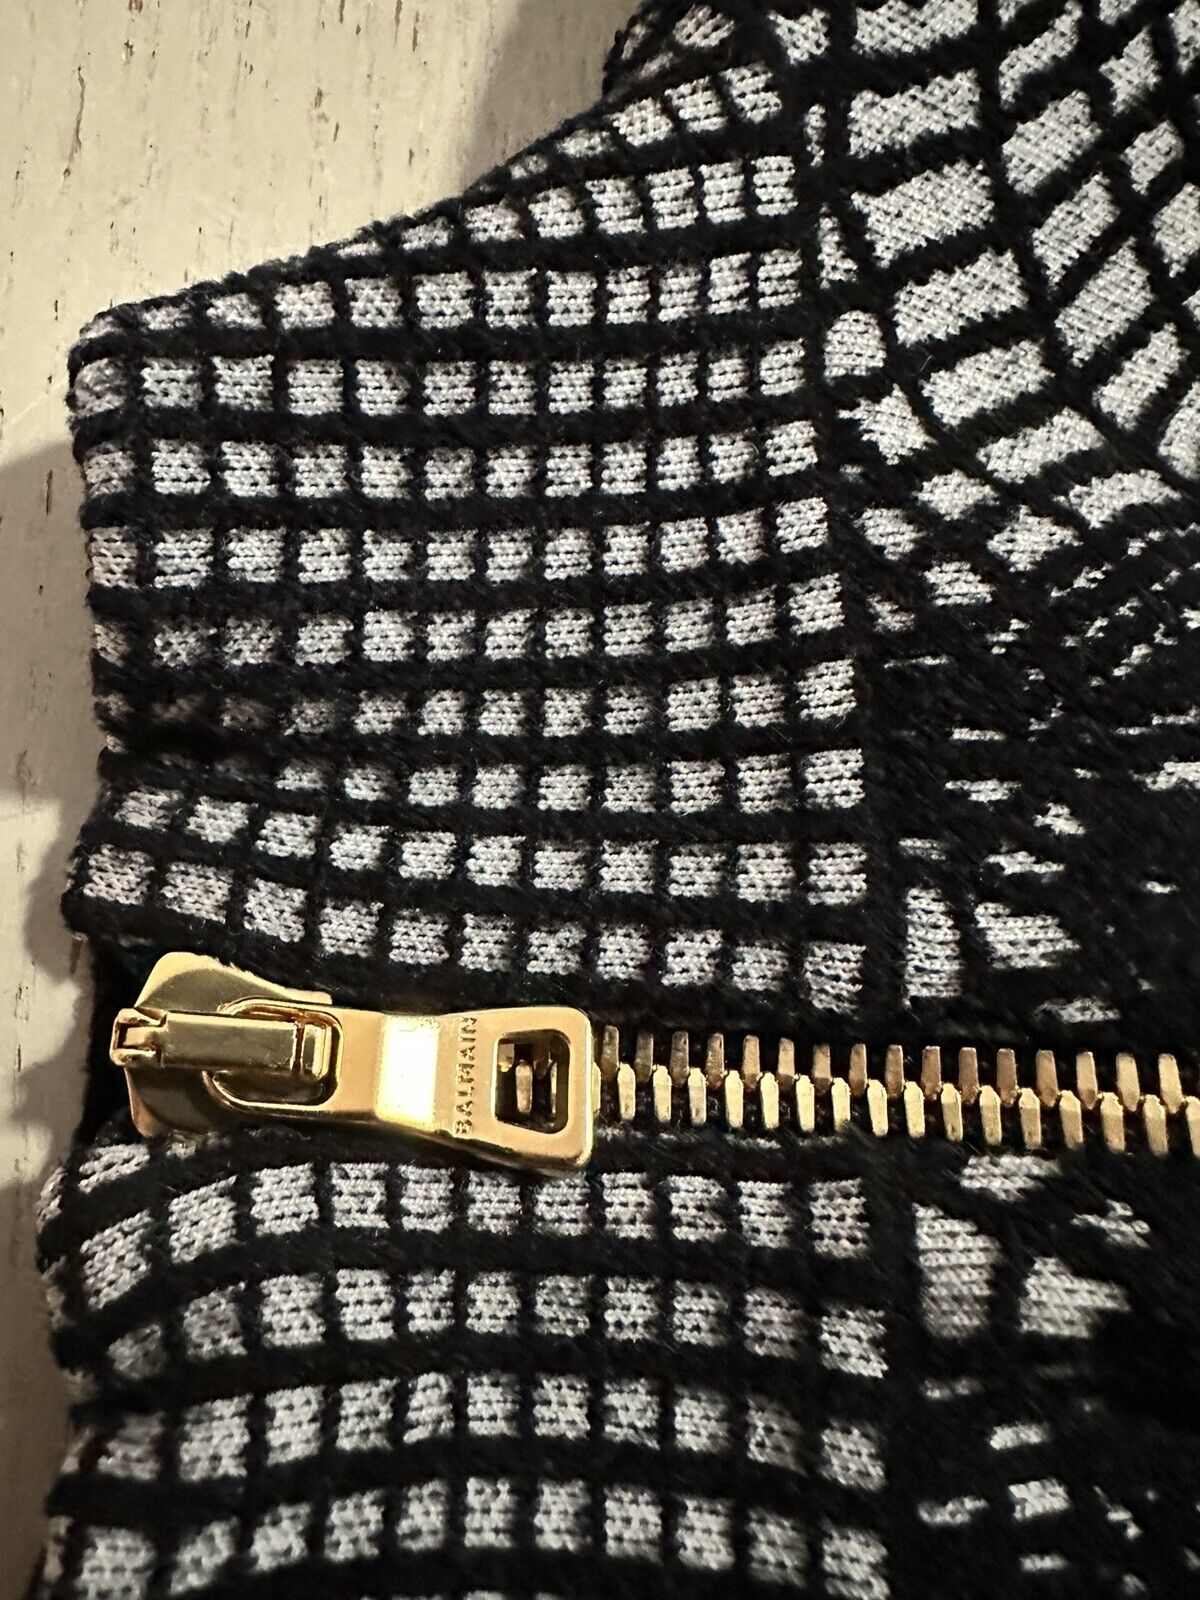 New $3050 Balmain Patterned-Knit Body-Con Minidress Black 44/12 Italy